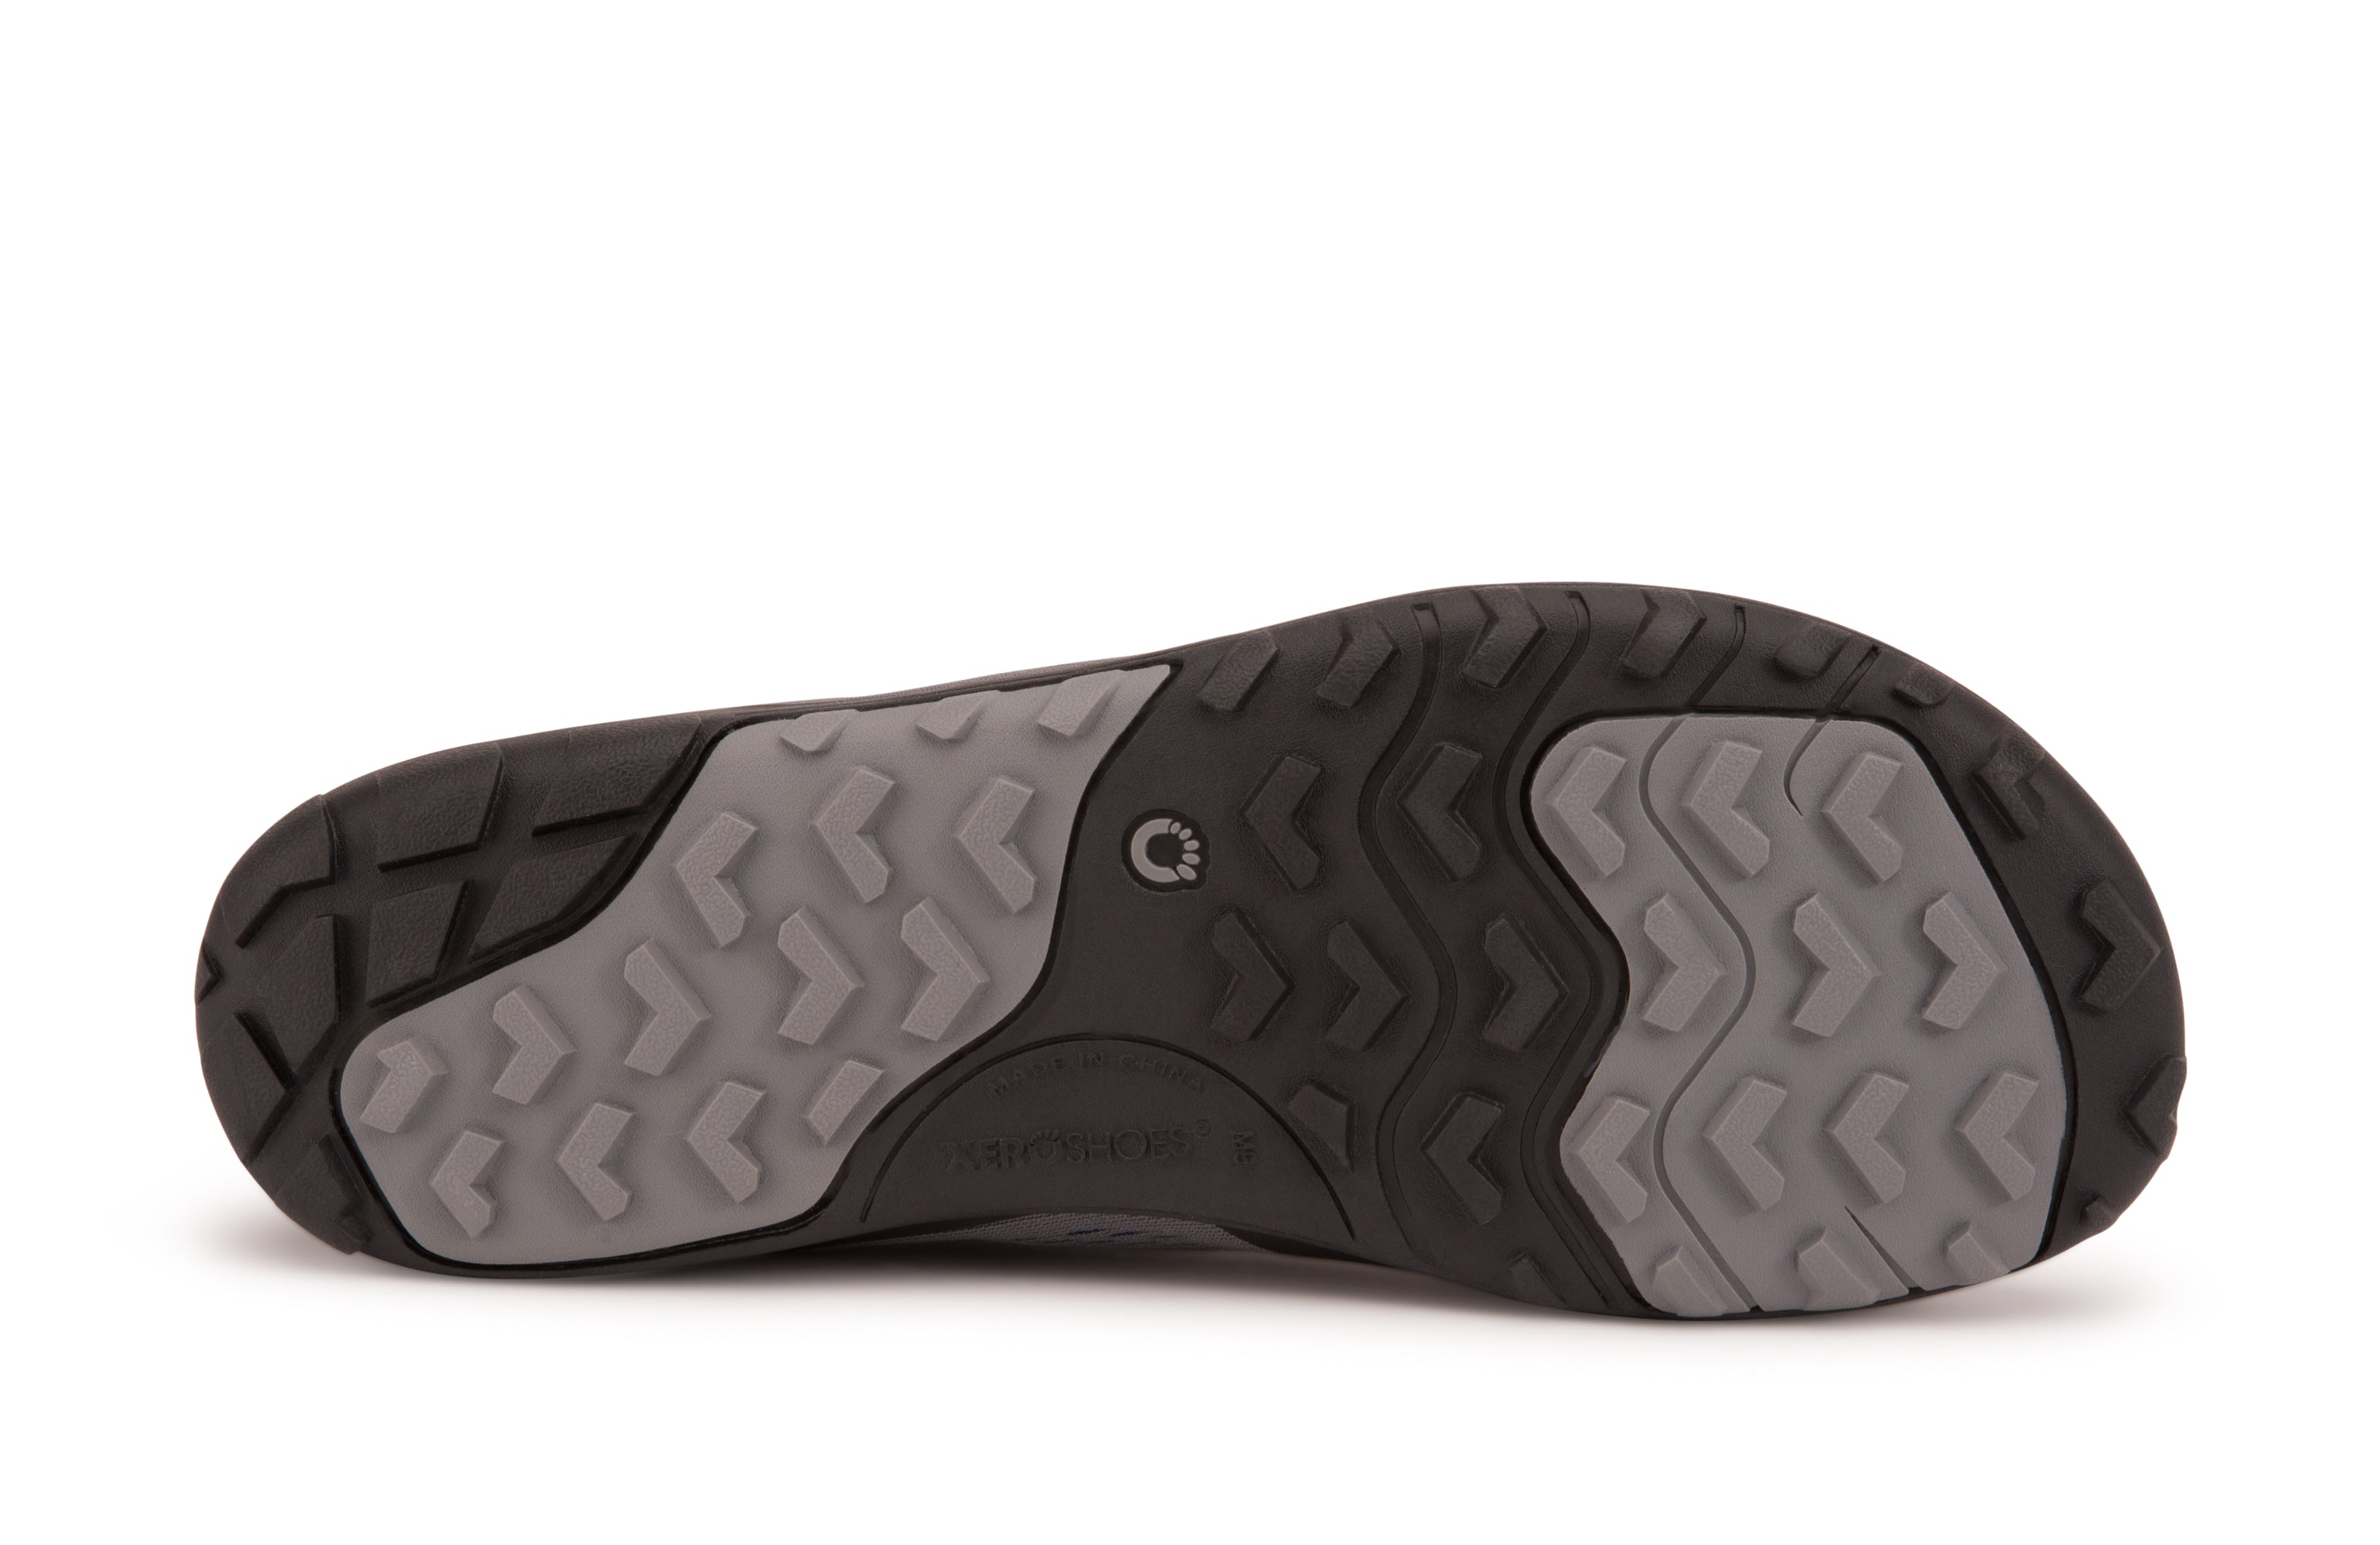 Xero Shoes Aqua X Sport barfods vand træningssko til mænd i farven steel gray / blue, saal